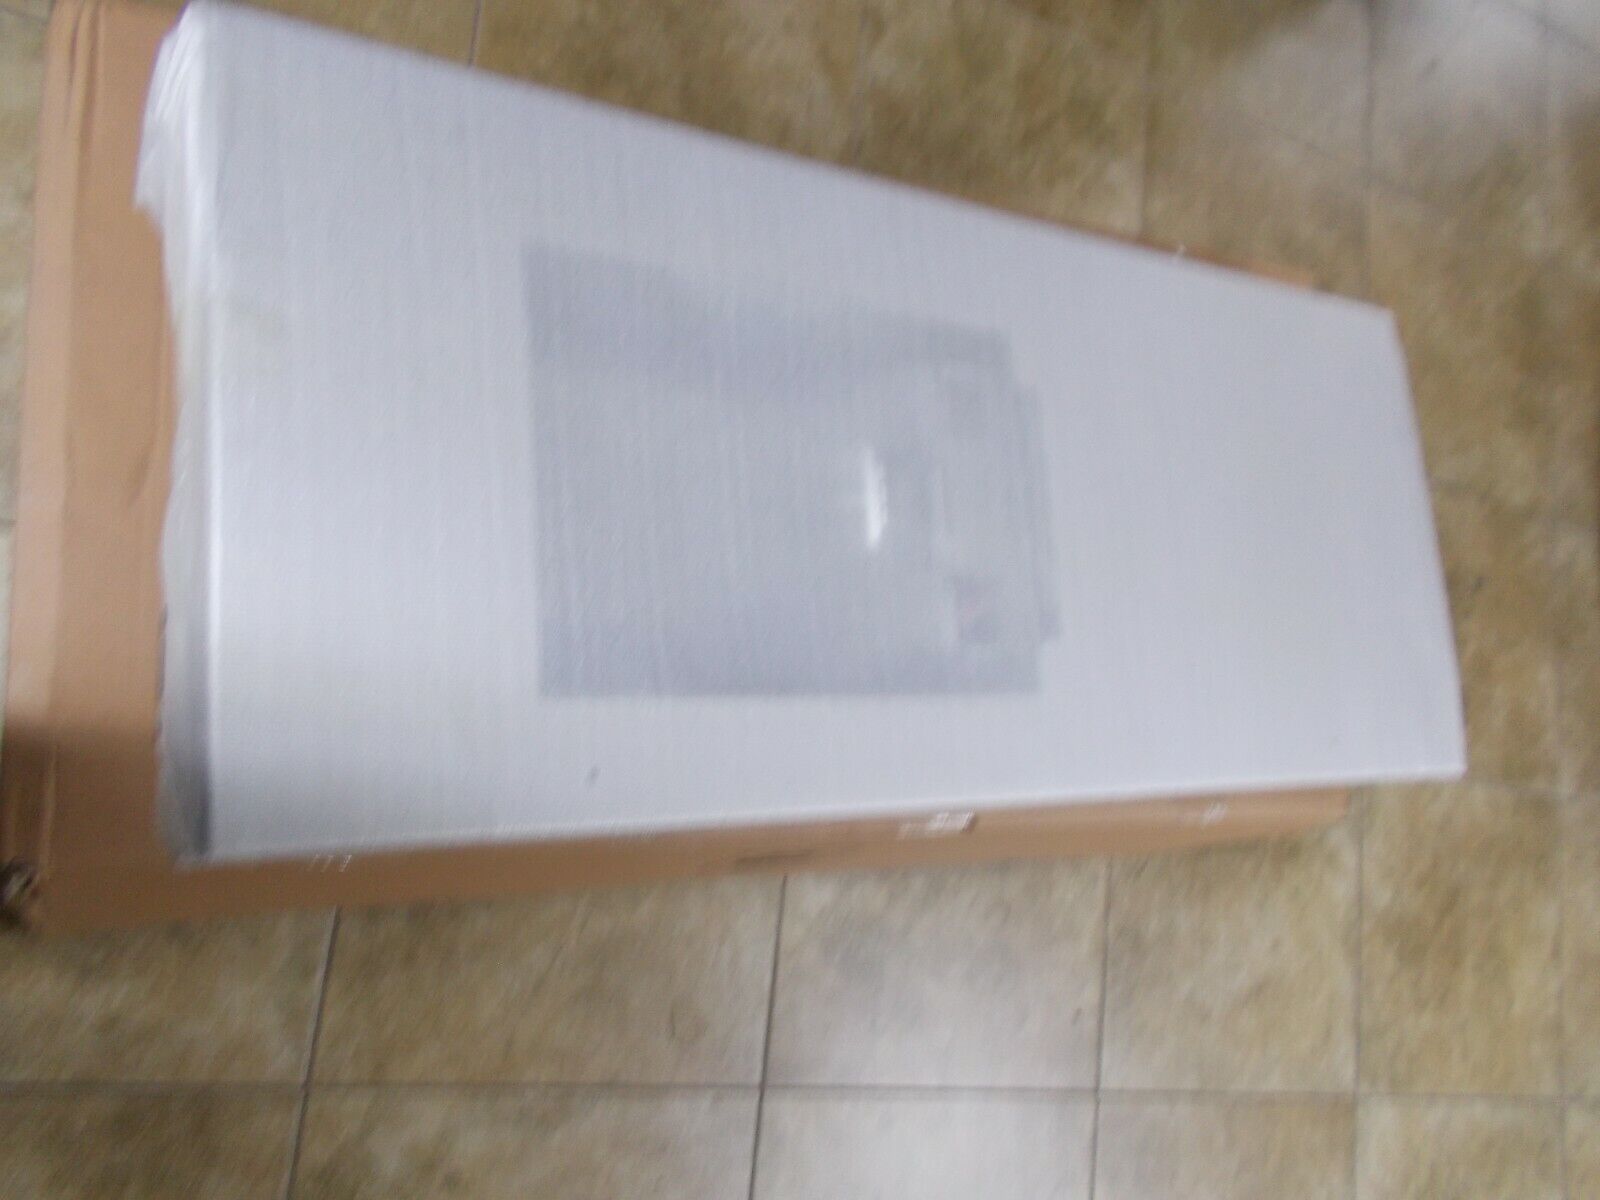 LG ADD76155804 Refrigerator Door Foam Assembly